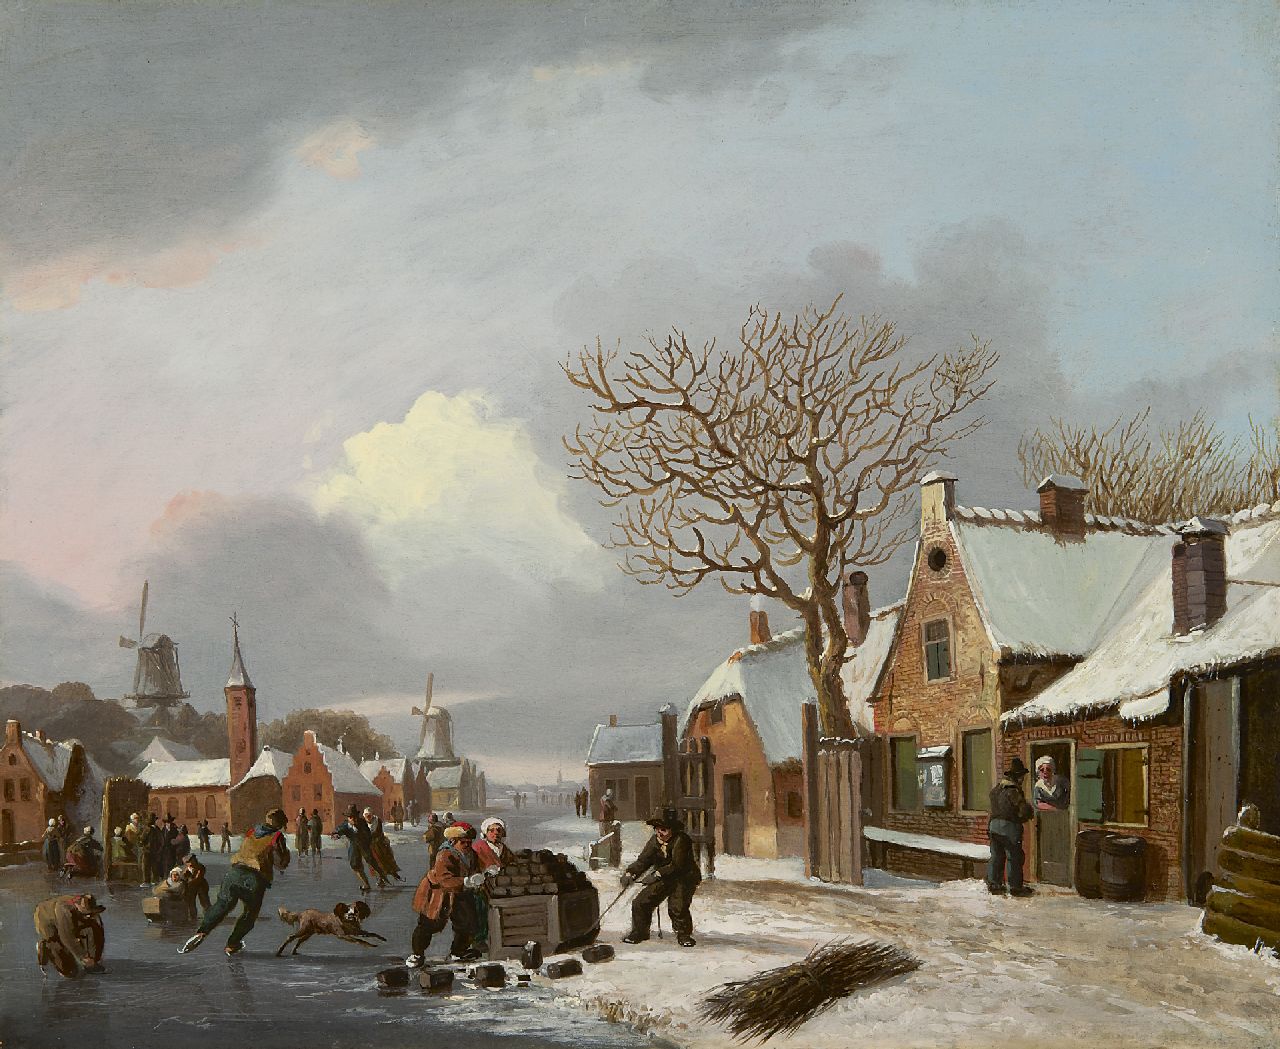 Stok J. van der | Jacobus van der Stok, Winterlandschap met schaatsers, olieverf op paneel 32,1 x 38,9 cm